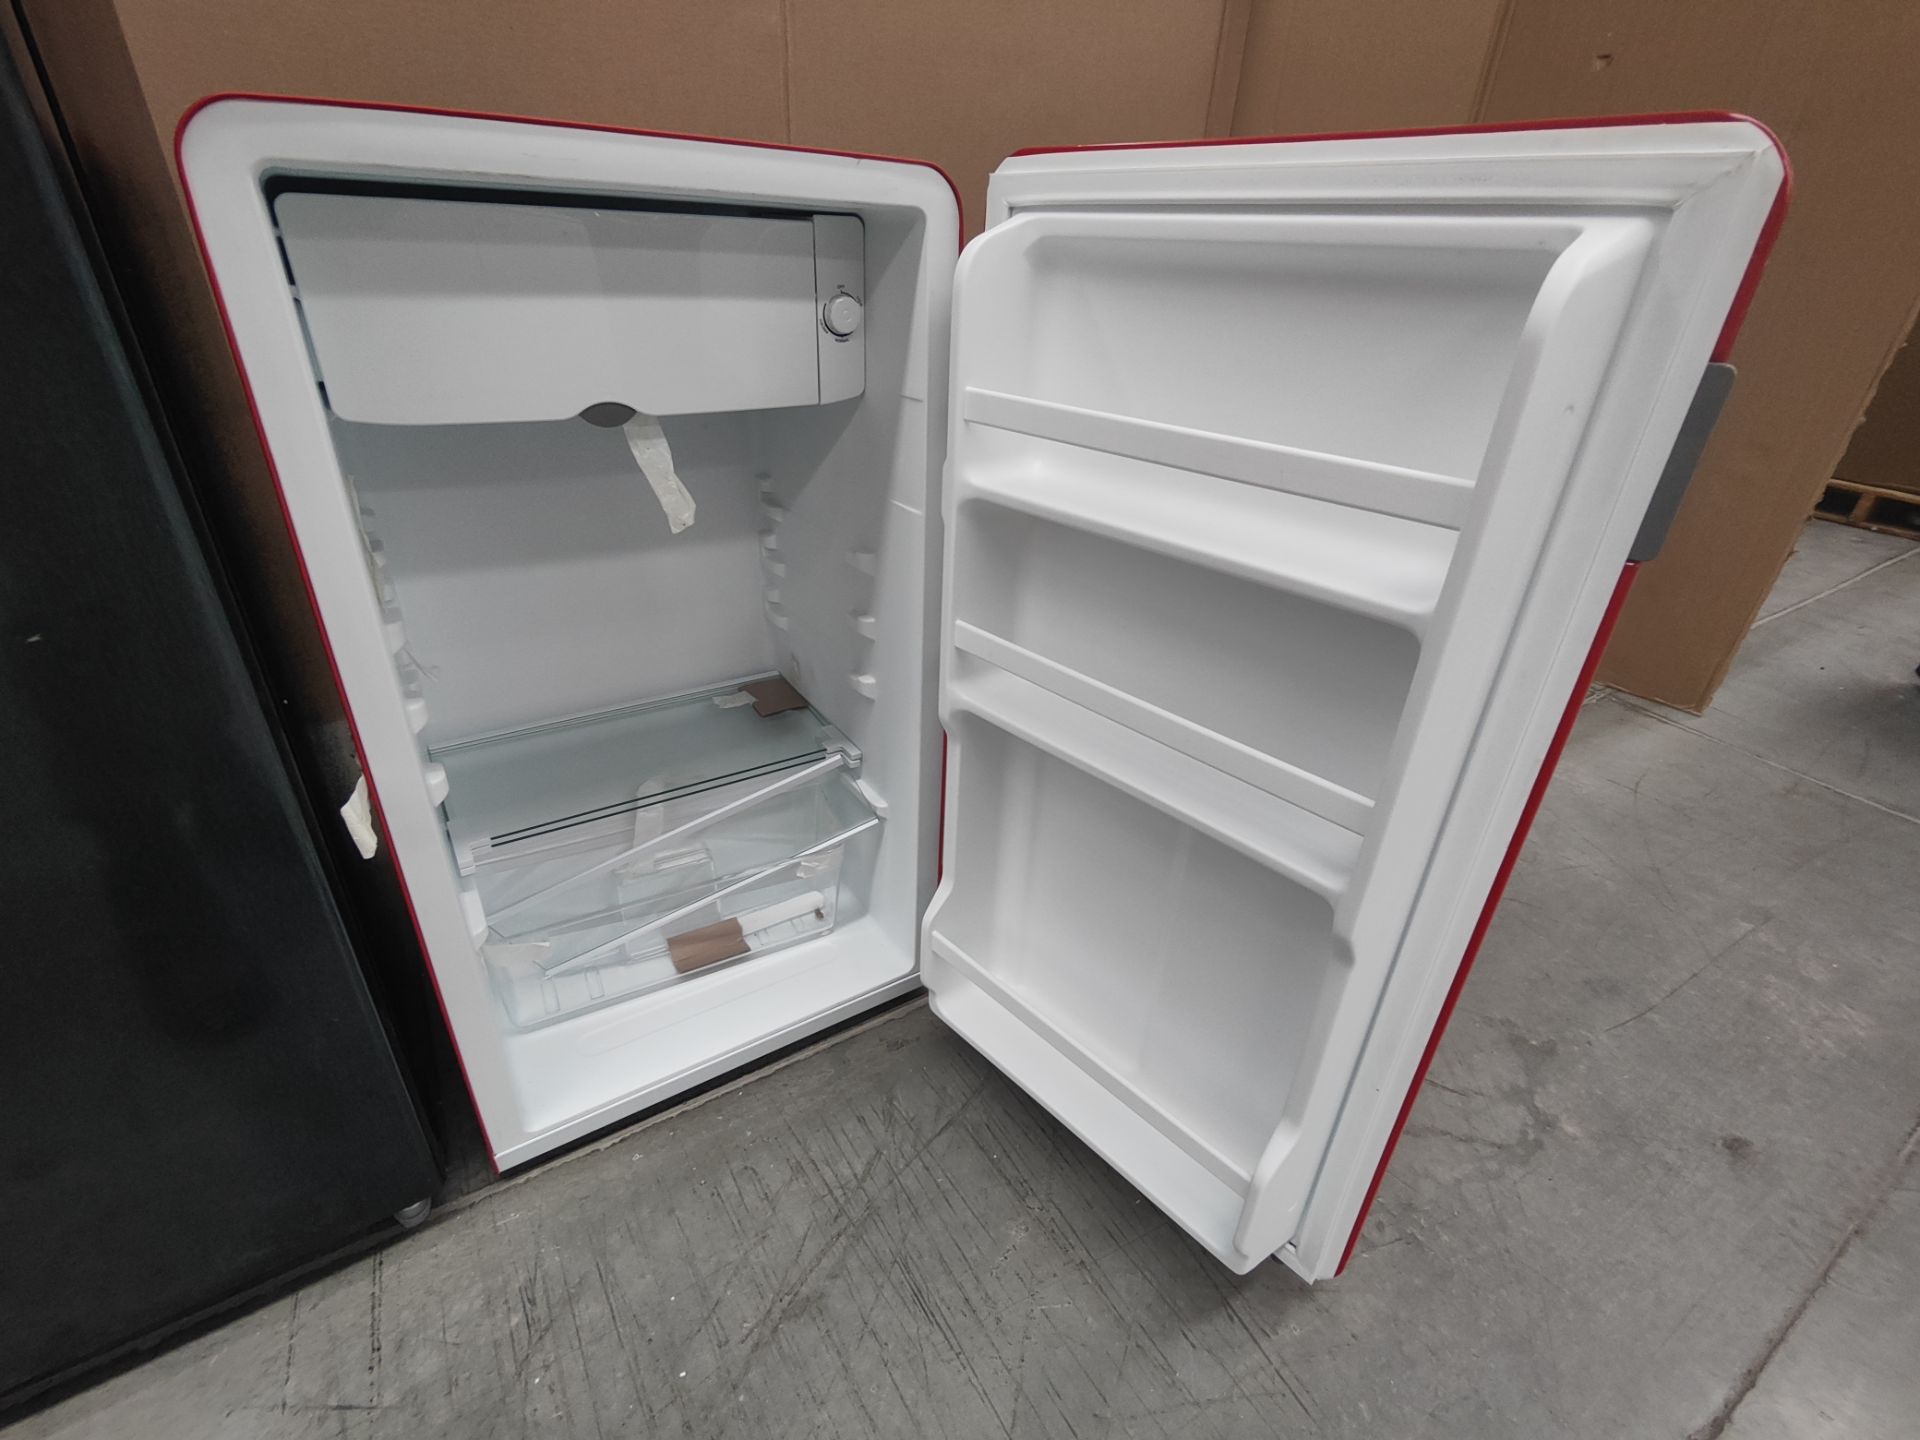 Lote de refrigerador y minibar contiene: 1 Refrigerador Marca ATVIO, Modelo AT-6.6URS, Serie 1310040 - Image 5 of 6